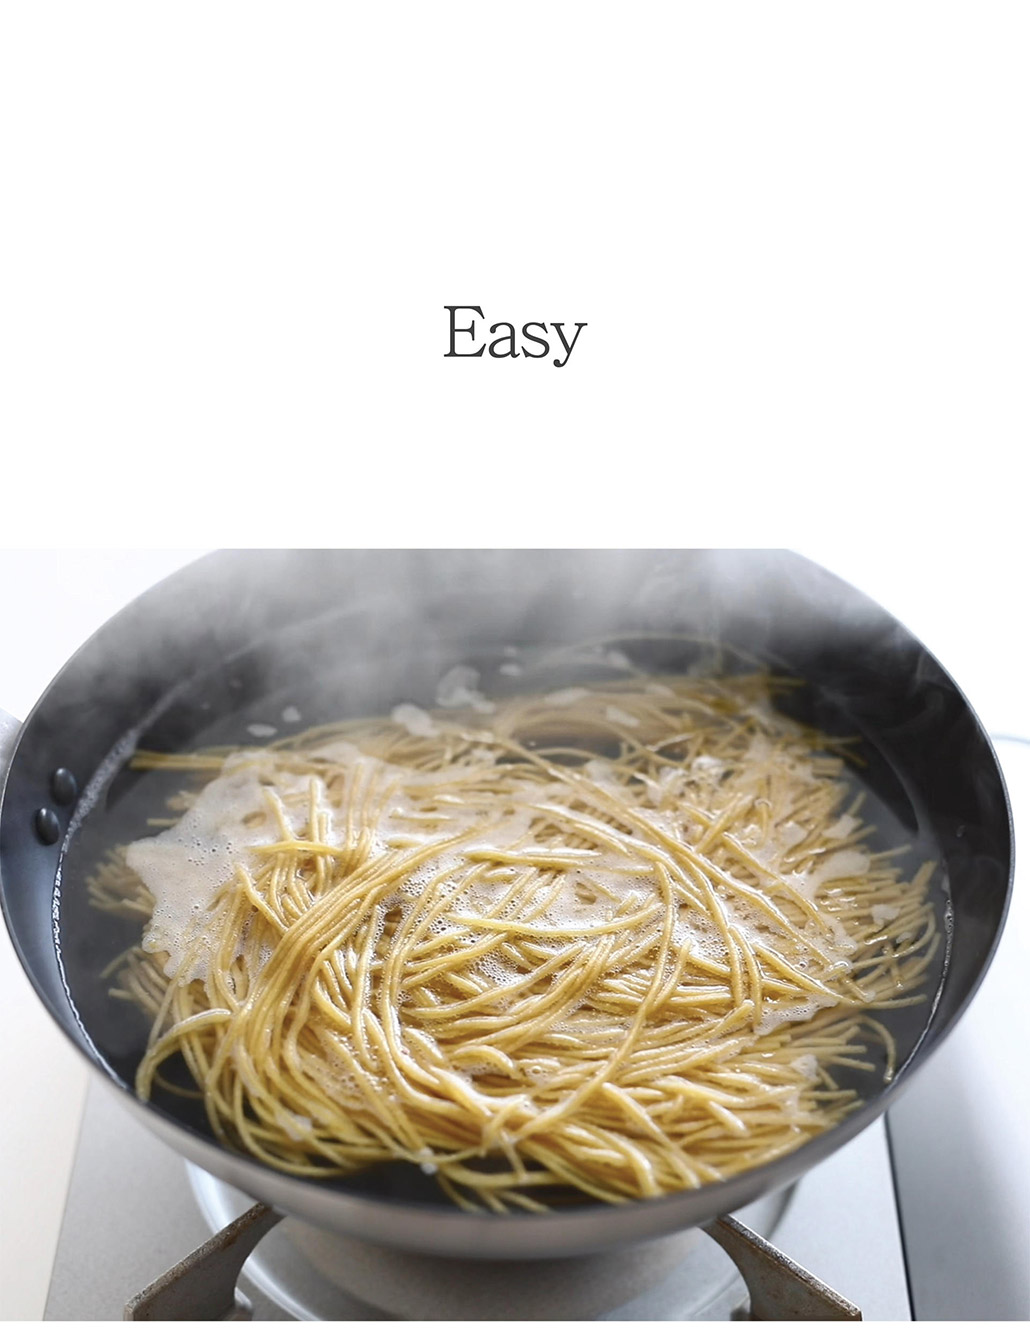 韓國食品-[BORIRO] Barley dood sprout Boribori Noodles 400g